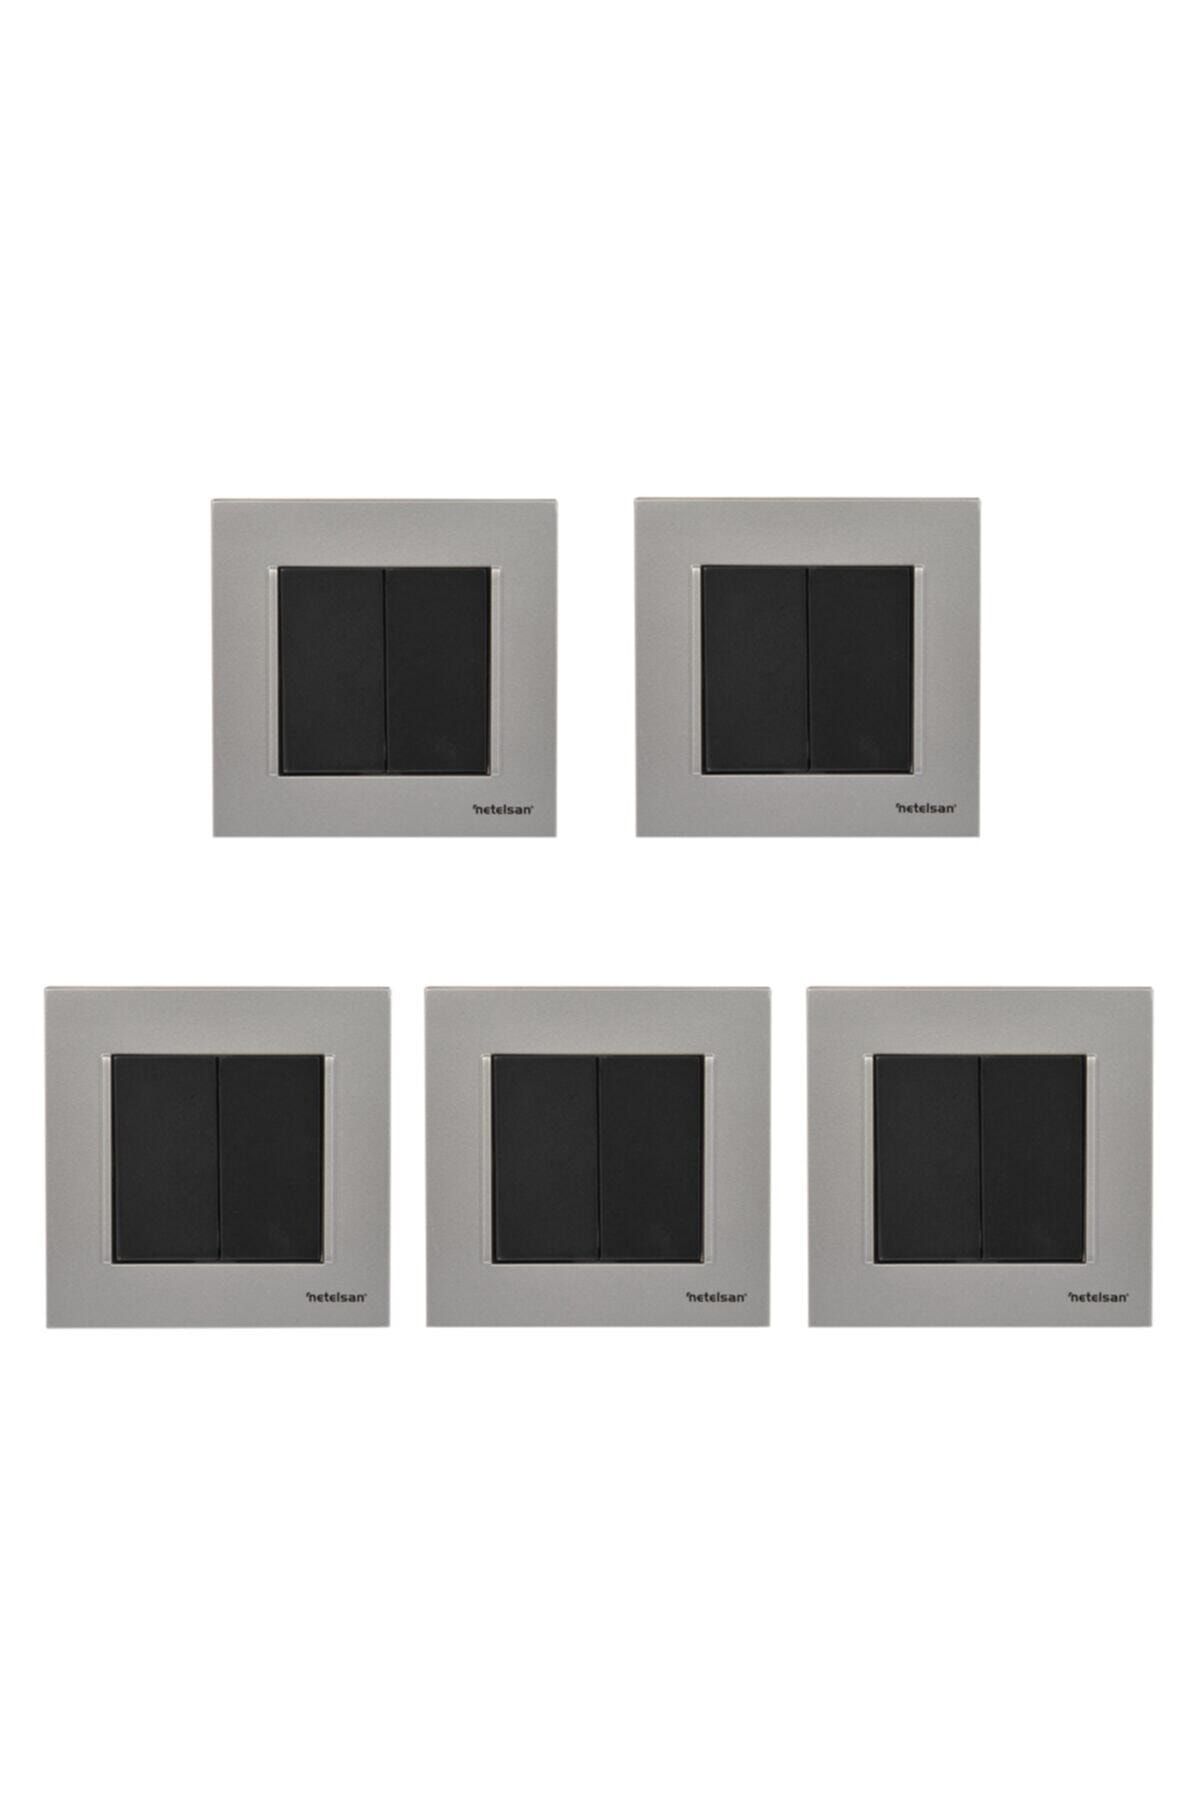 Netelsan Komütatör Renkli Ikili Açma Kapama Düğmesi 5 Adet / Gümüş Mat - Siyah / Komütatör